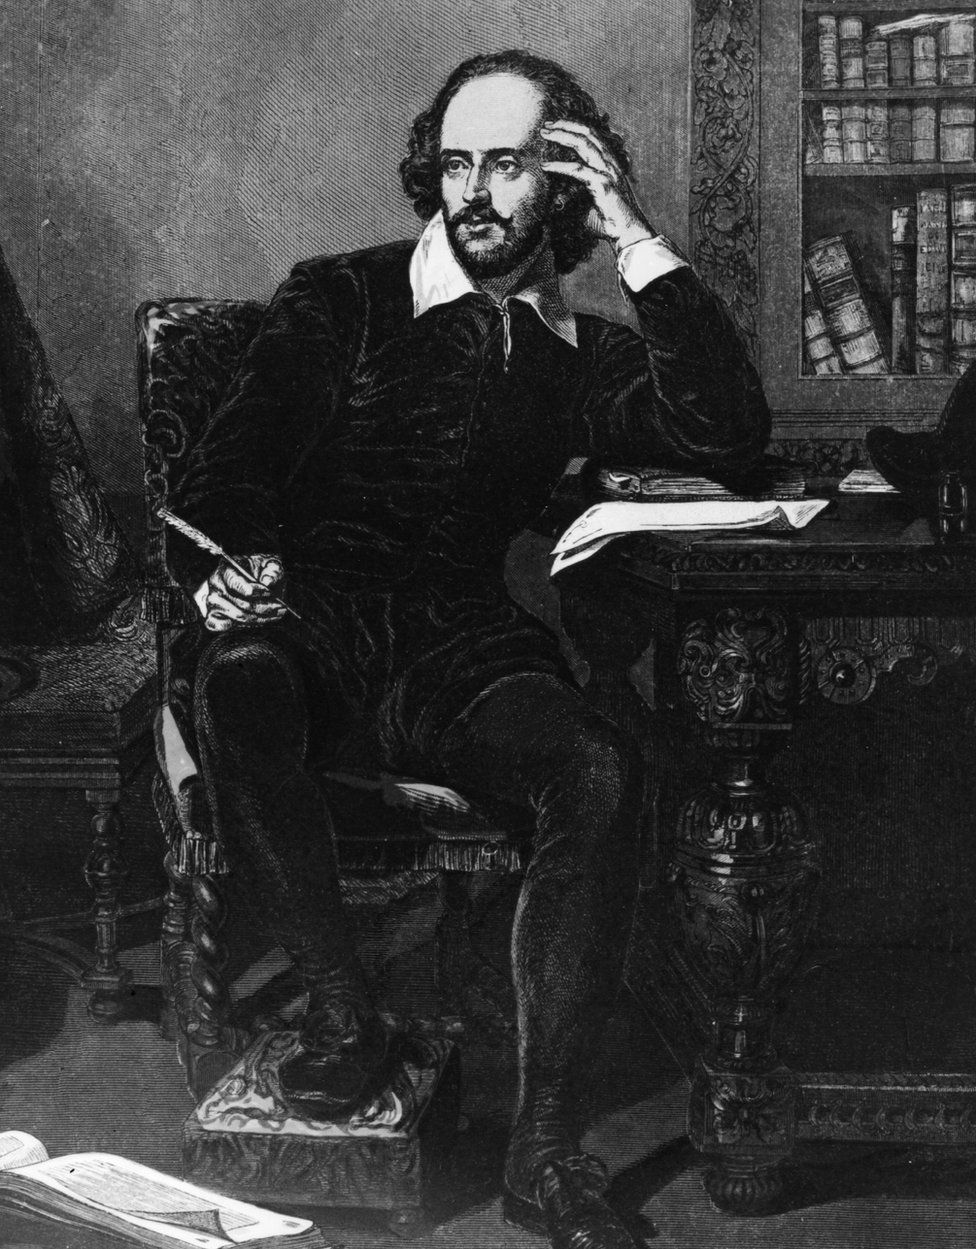 William Shakespeare (1564 - 1616) at his desk circa 1600